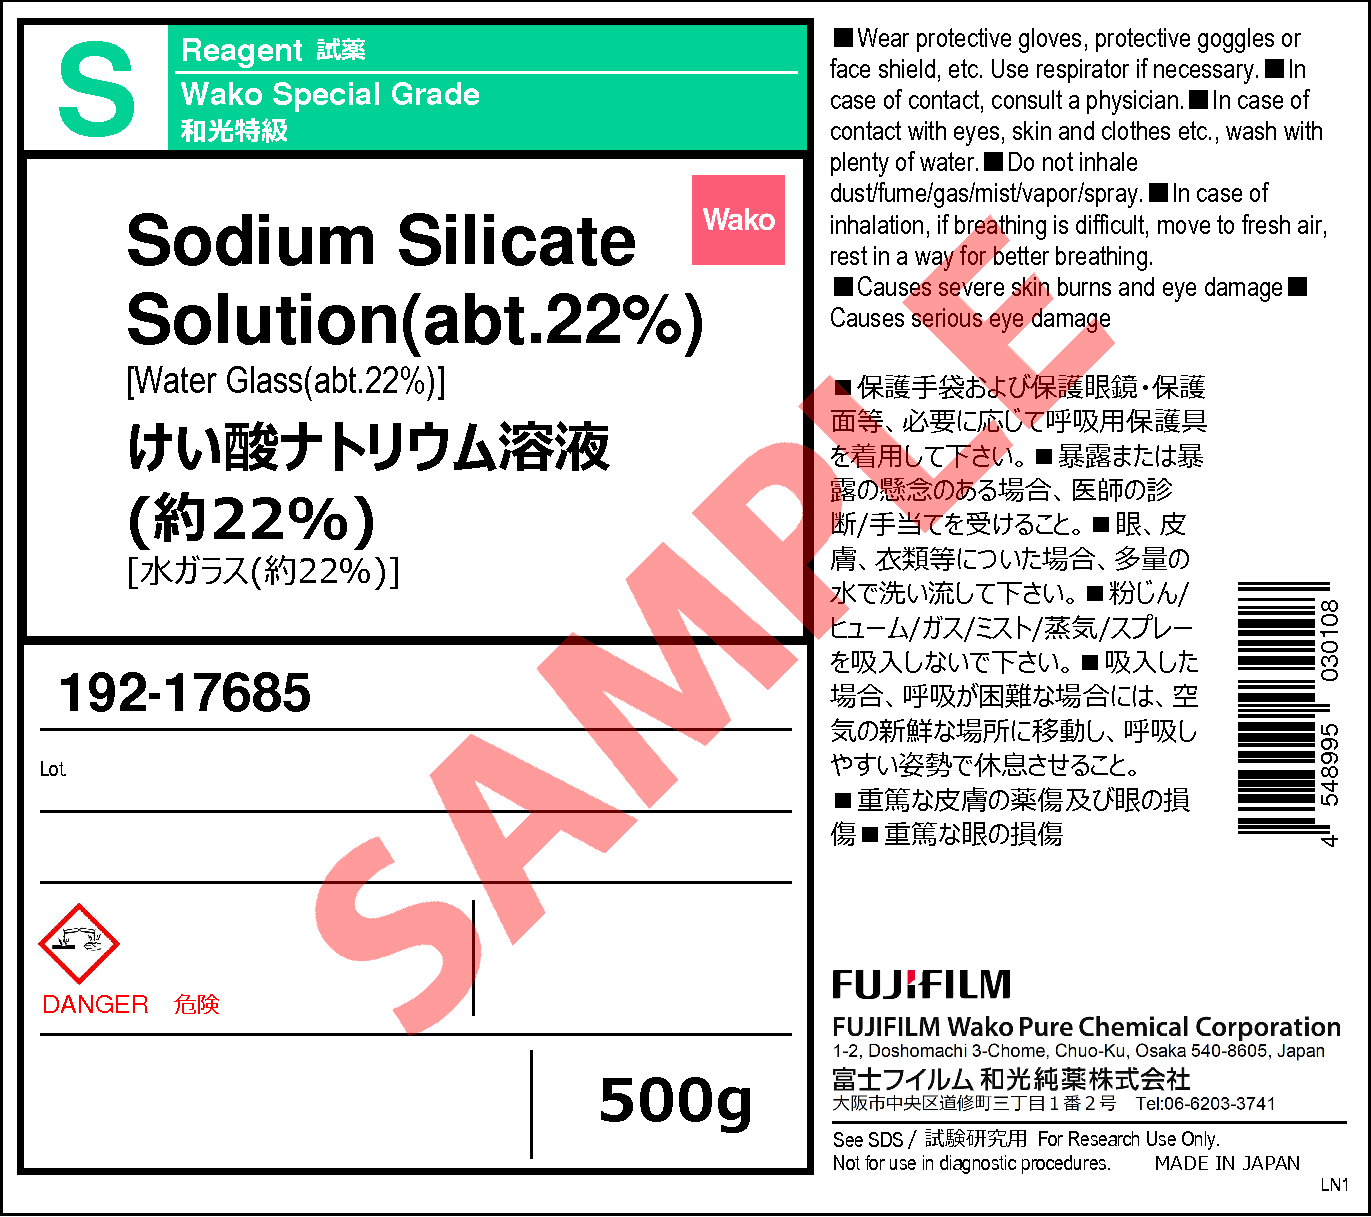 1344-09-8・けい酸ナトリウム溶液(約22%)・Sodium Silicate Solution 